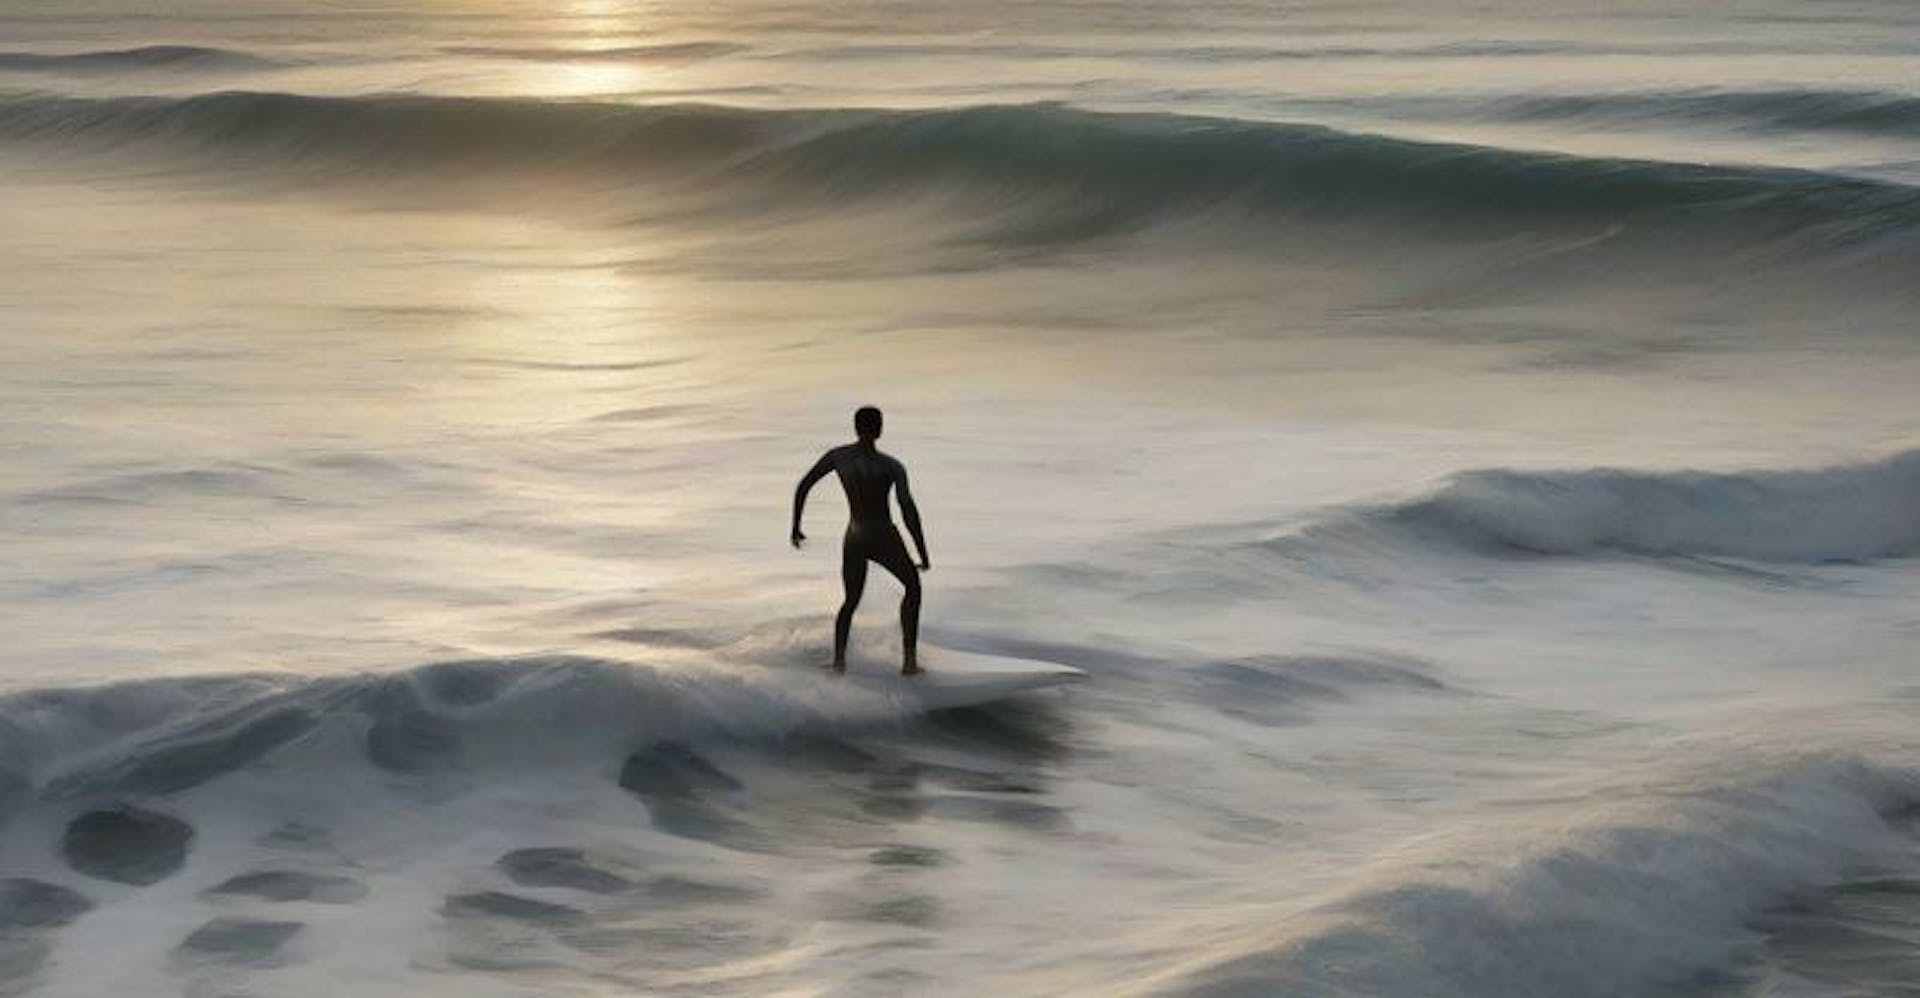 孤独的冲浪者在静态网页的浩瀚海洋中乘风破浪